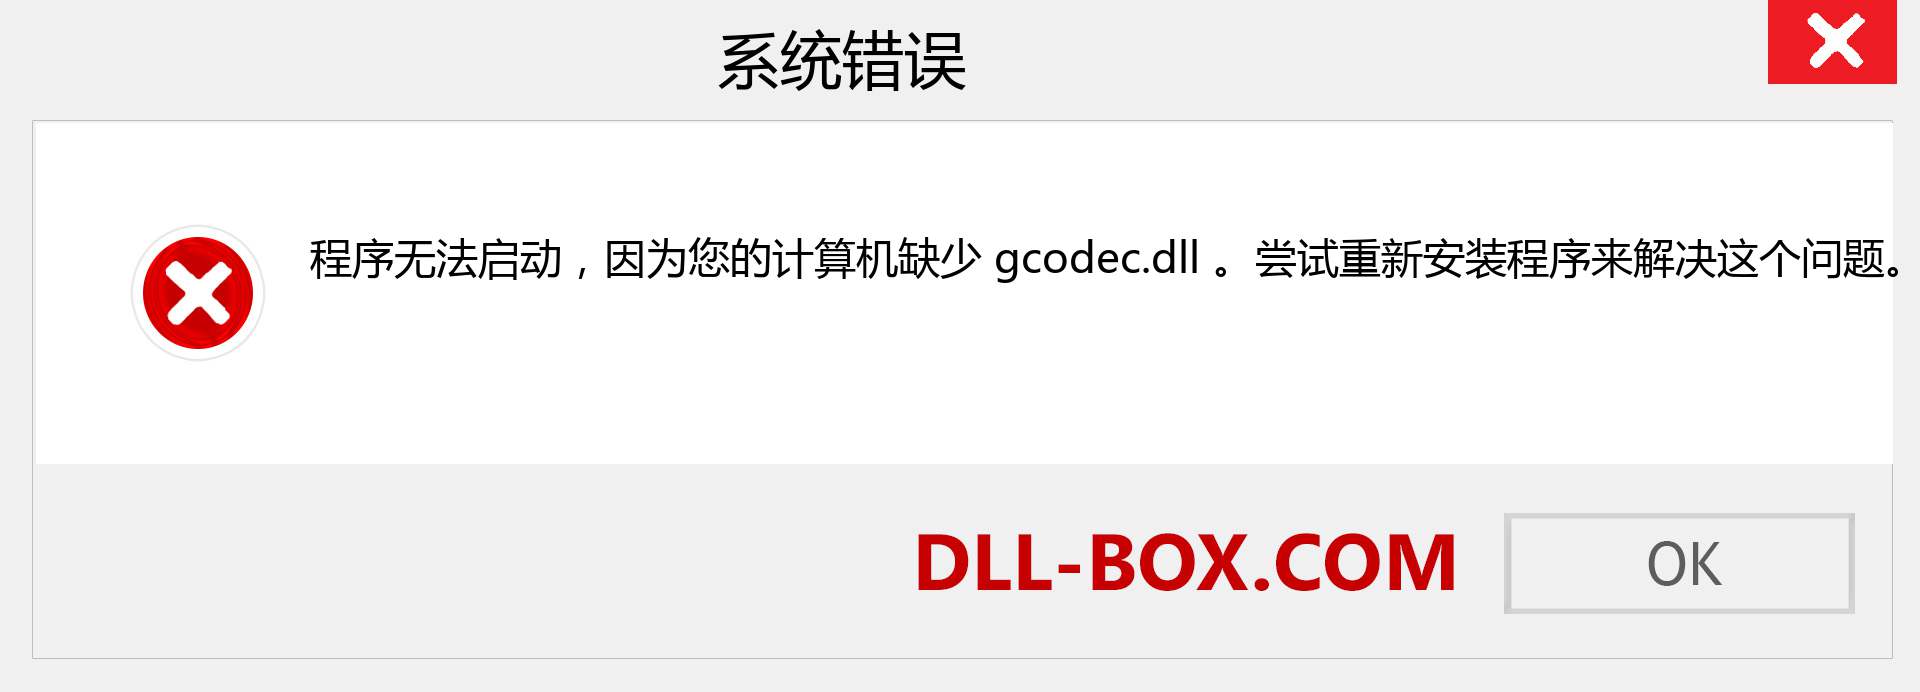 gcodec.dll 文件丢失？。 适用于 Windows 7、8、10 的下载 - 修复 Windows、照片、图像上的 gcodec dll 丢失错误